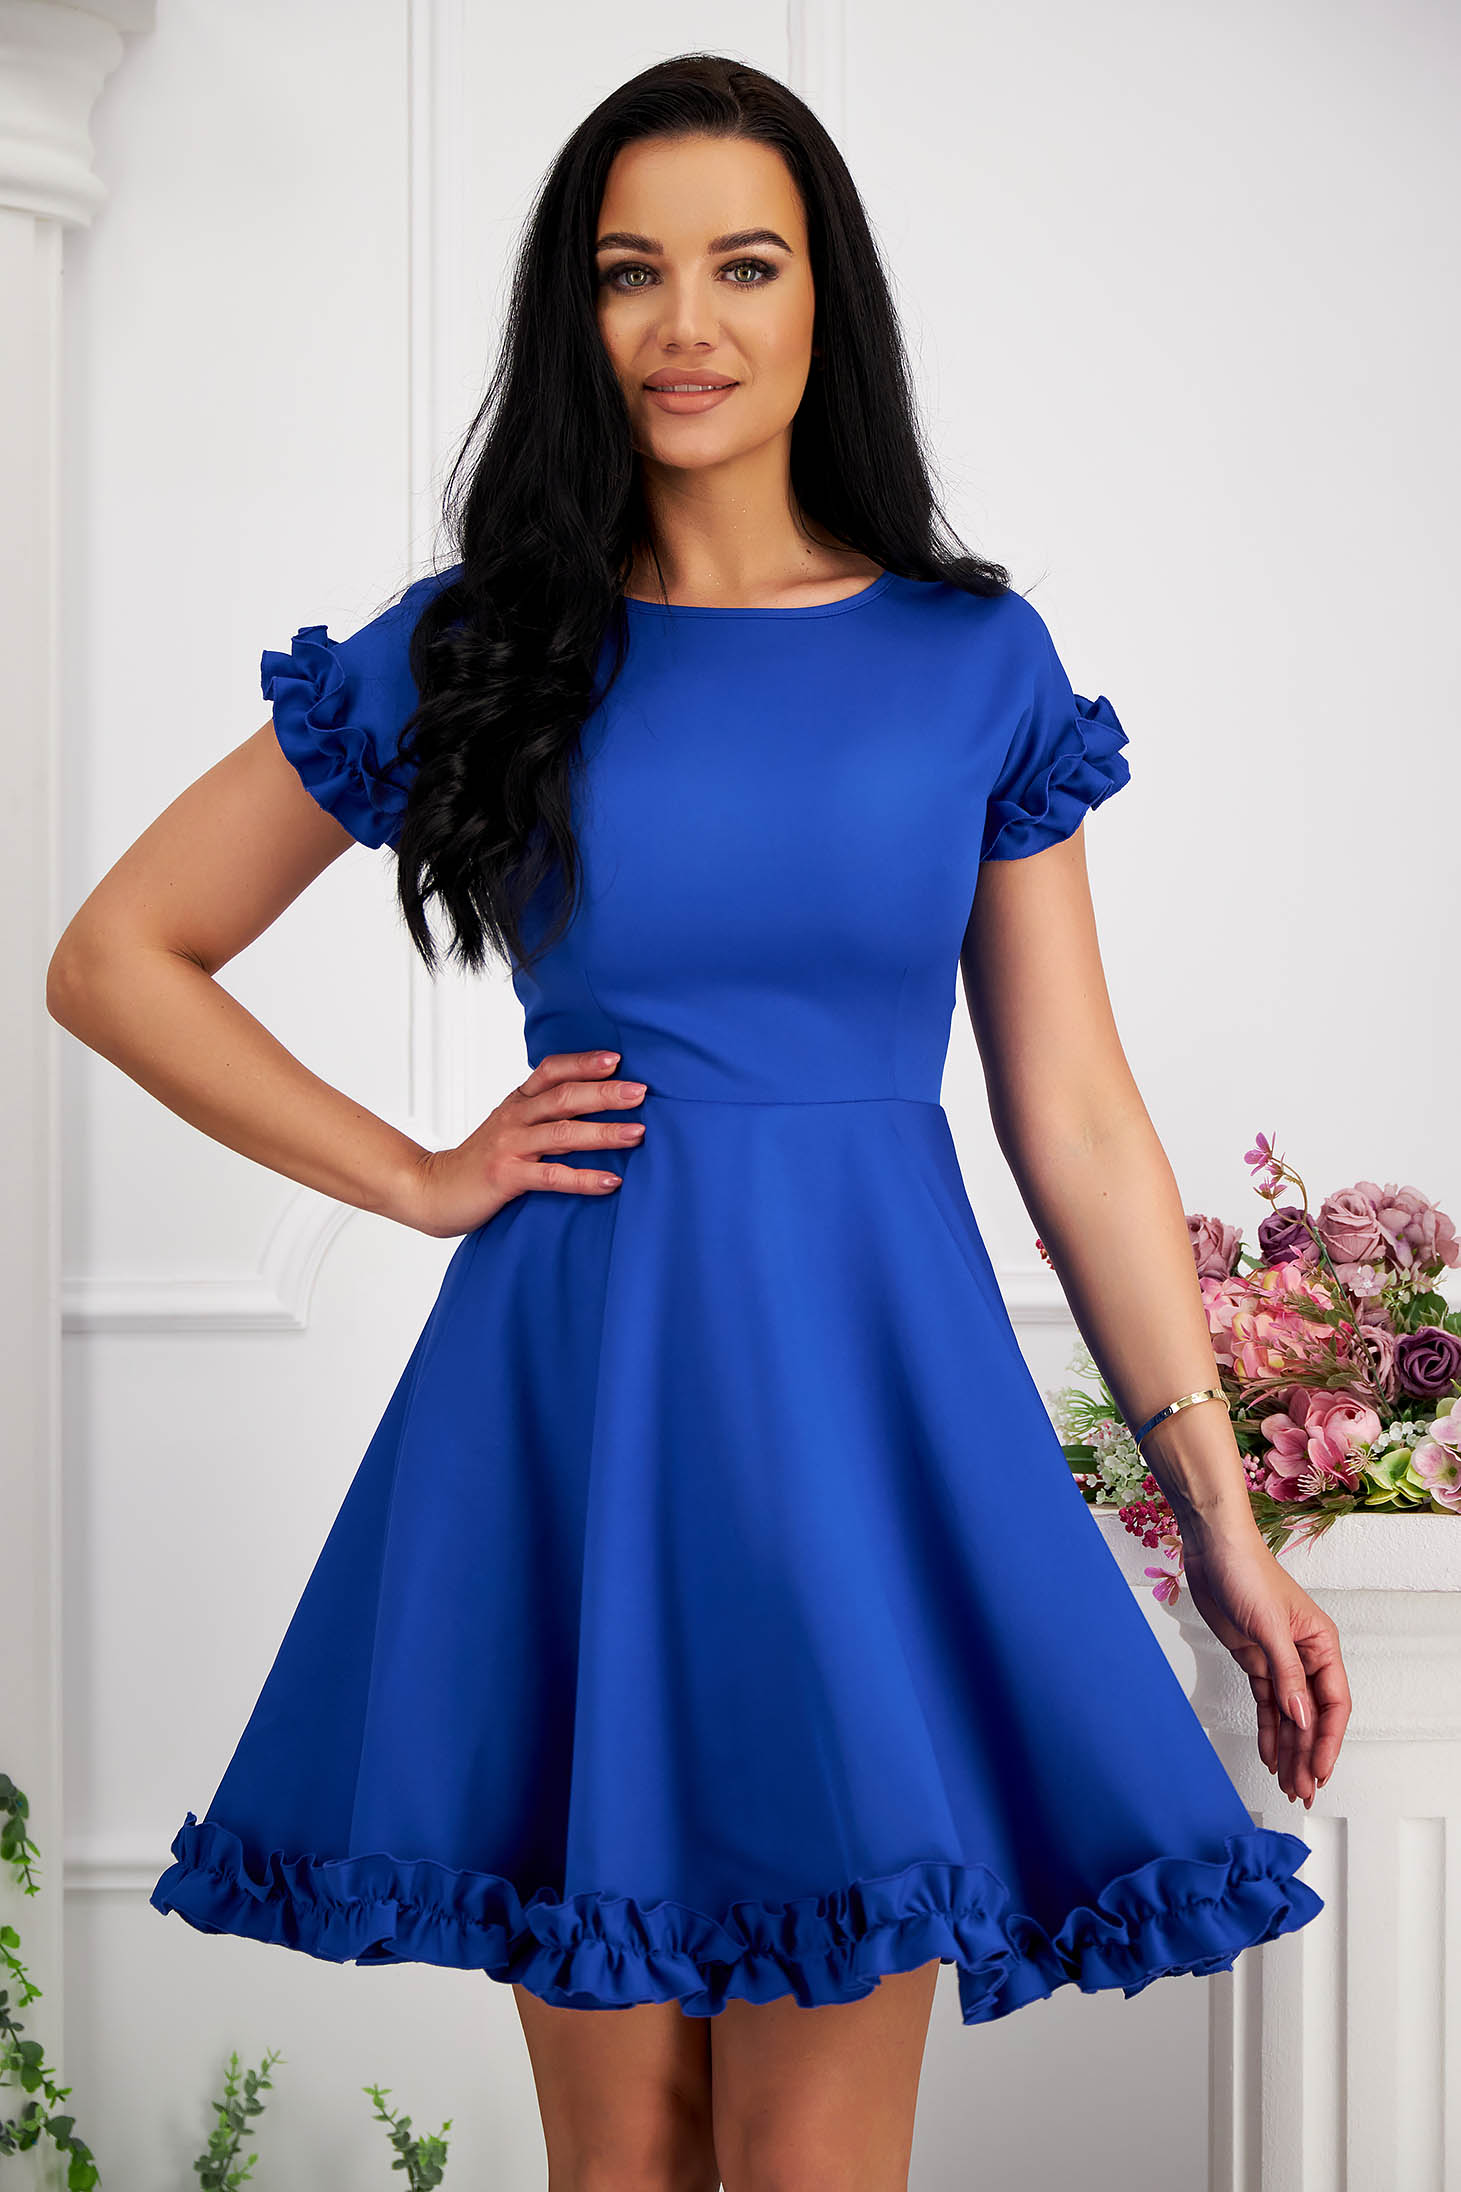 Blue Short Elastic Fabric Dress with Ruffles - StarShinerS 1 - StarShinerS.com